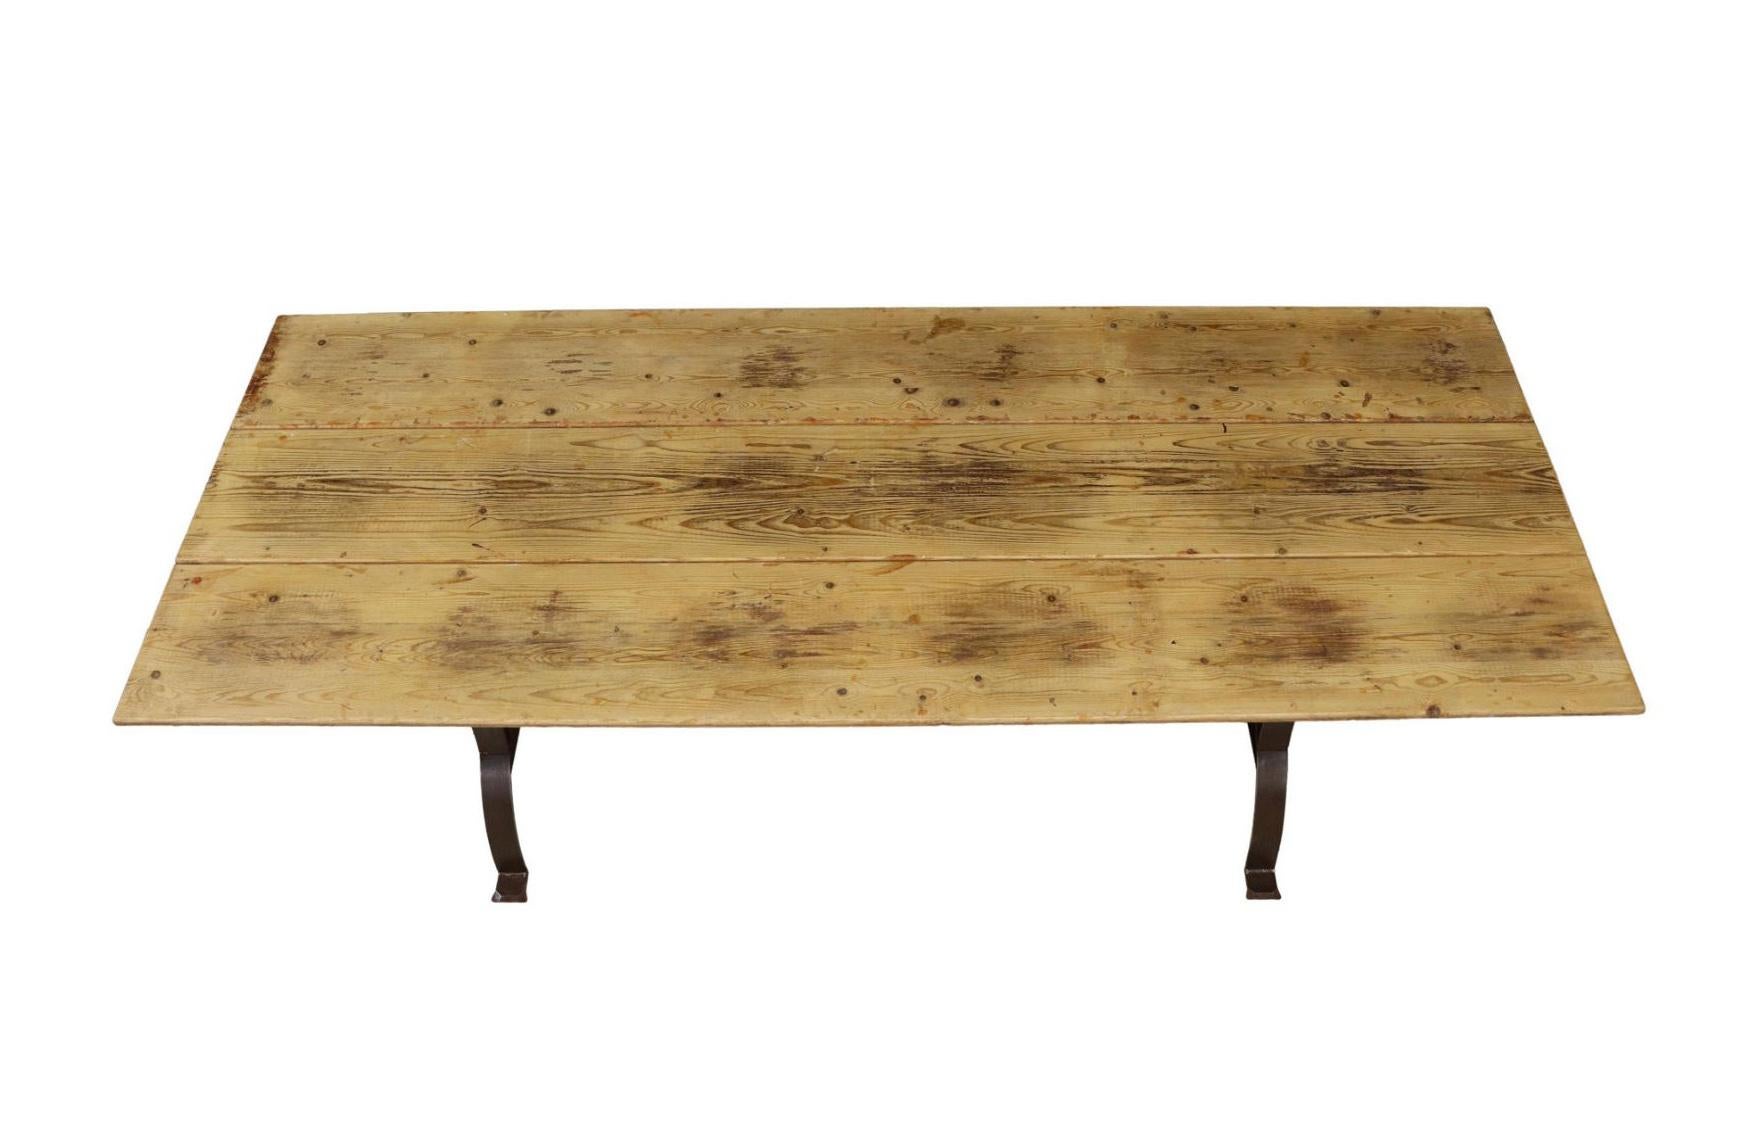 Grande table de salle à manger rustique, fin C.I.C.. Cette table présente un plateau en pin ciré, des supports en curule en fonte, reliés par un croisillon.

Dimensions
 environ 30 